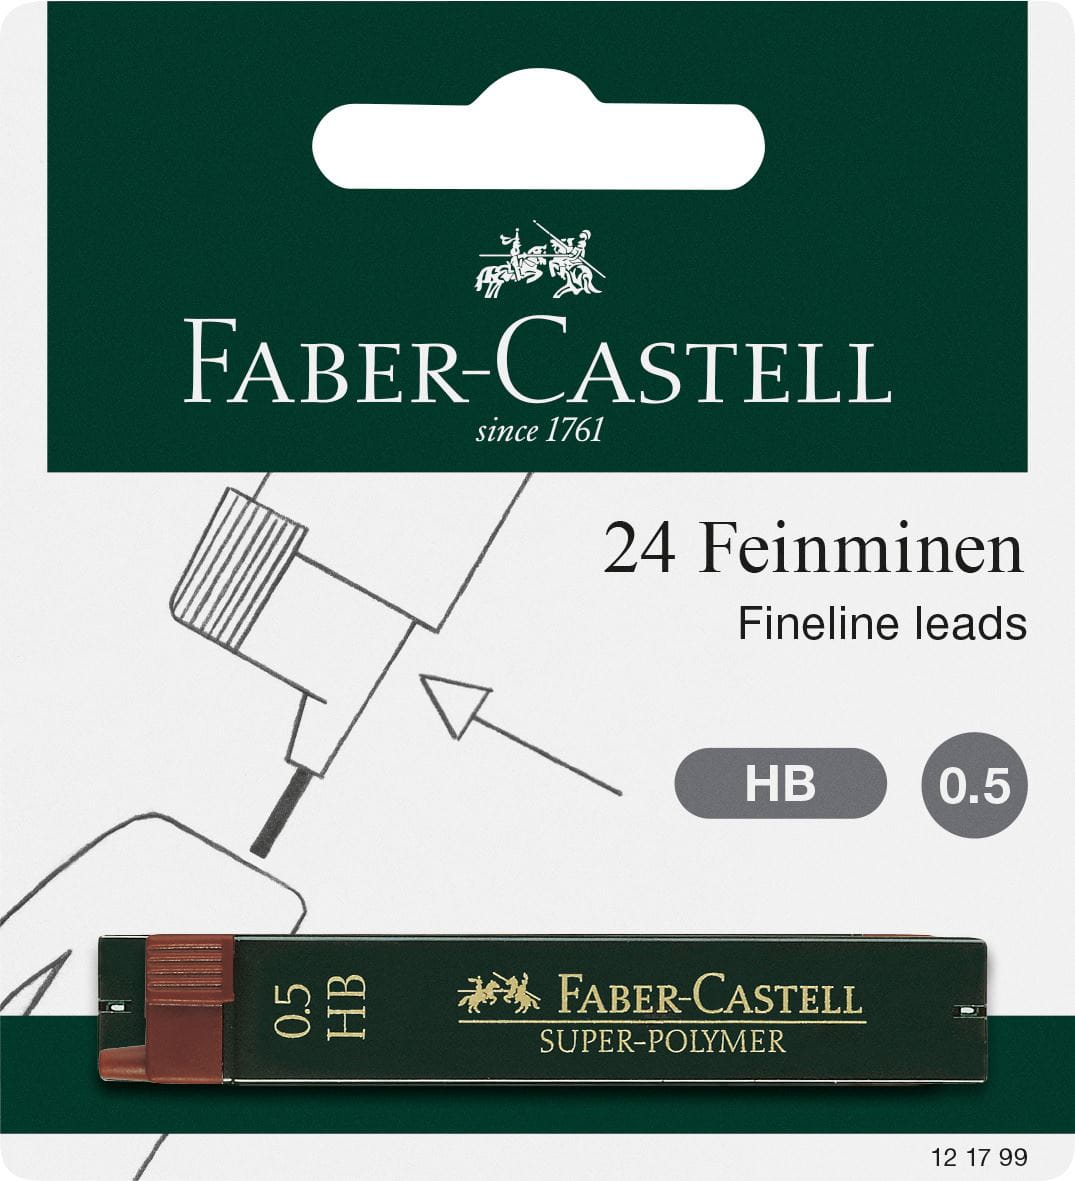 Faber-Castell - Super-Polymer Feinmine, HB, 0.5 mm, 2er Set